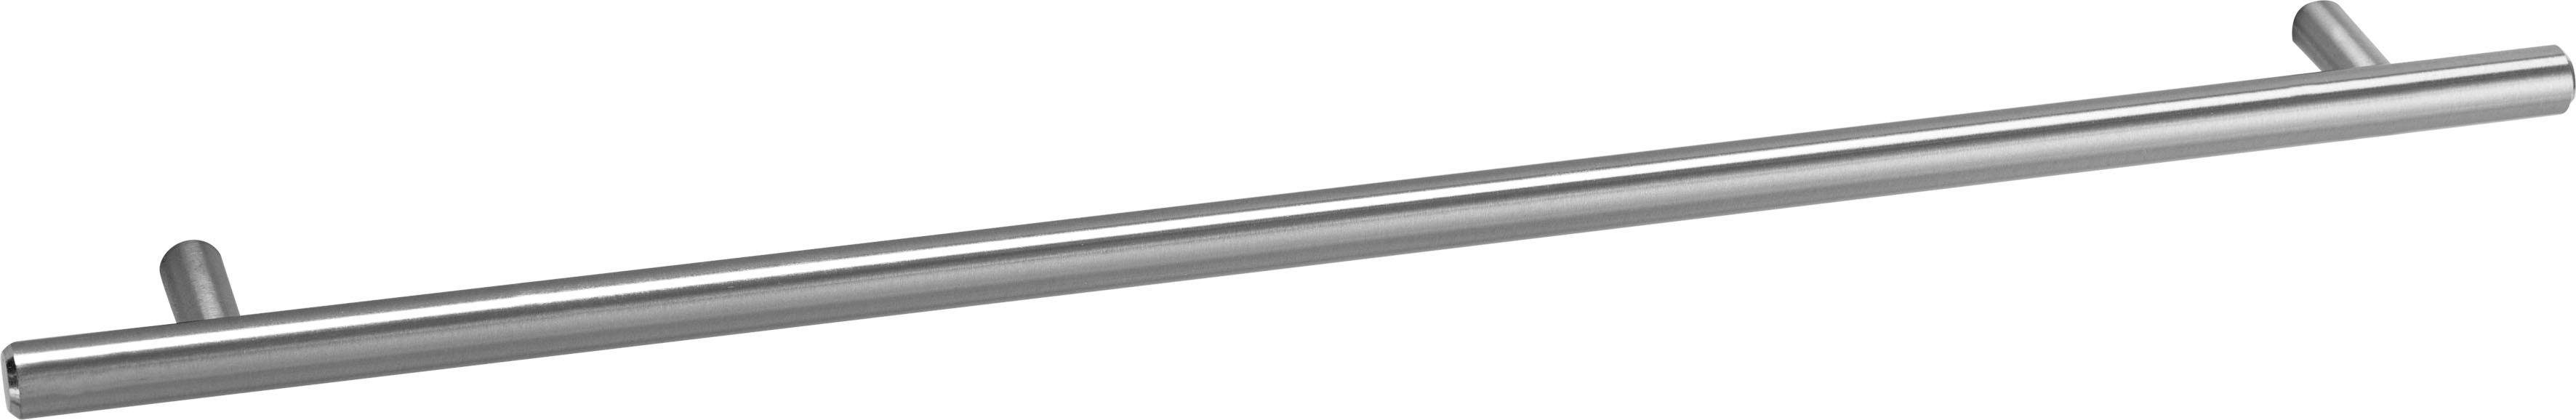 Bern Tür Hochglanz/weiß 60 mit cm breit, mit Füßen, mit OPTIFIT weiß Unterschrank 1 höhenverstellbaren Metallgriff